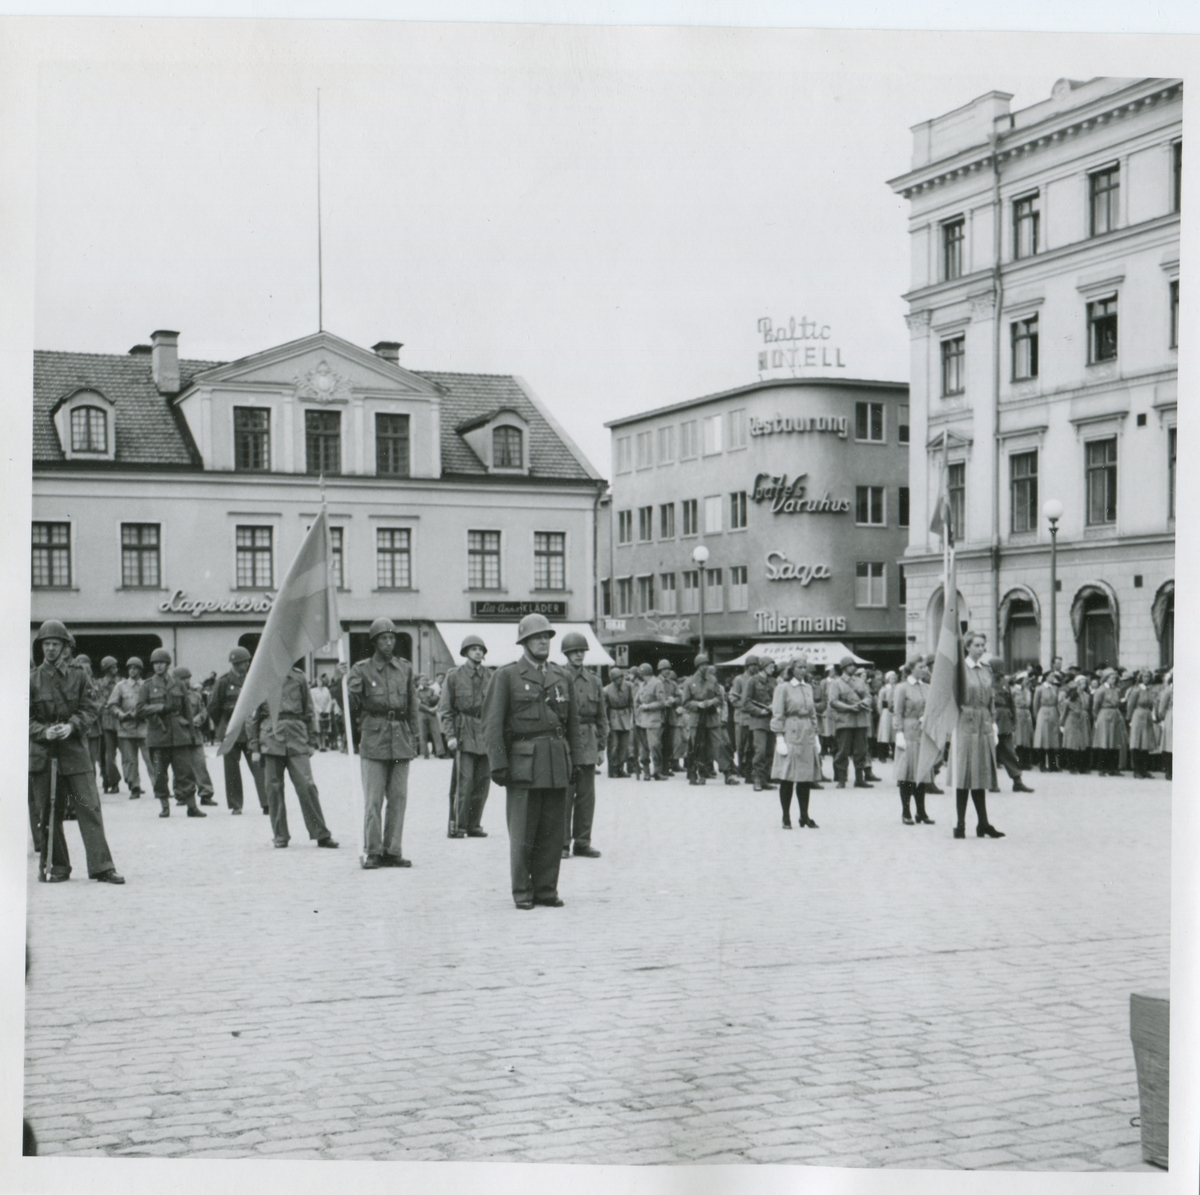 Högtid på Stora torget,Linköping 1940-50.
Hemvärnet, frivilligorganisationer